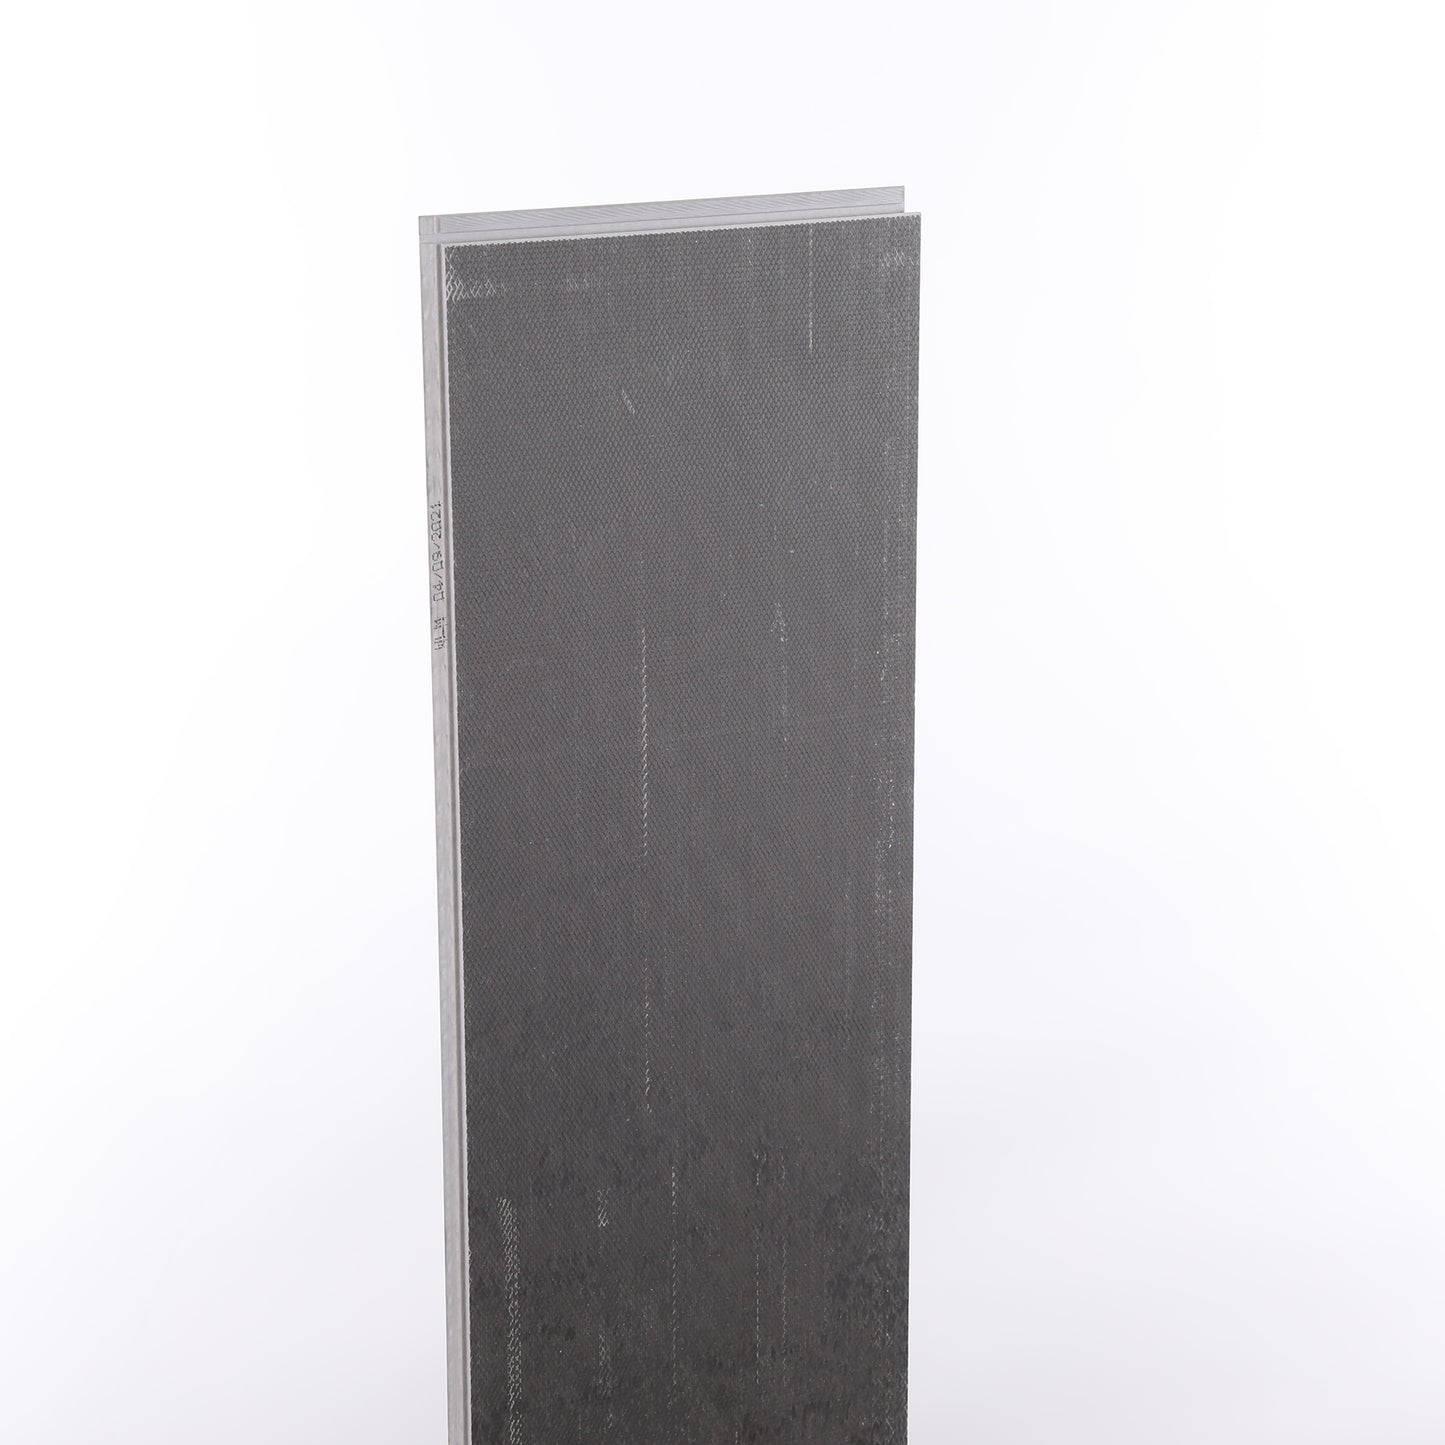 4mm Umber Oak HDPC® Waterproof Luxury Vinyl Plank Flooring 9.13 in. Wide x 48 in. Long